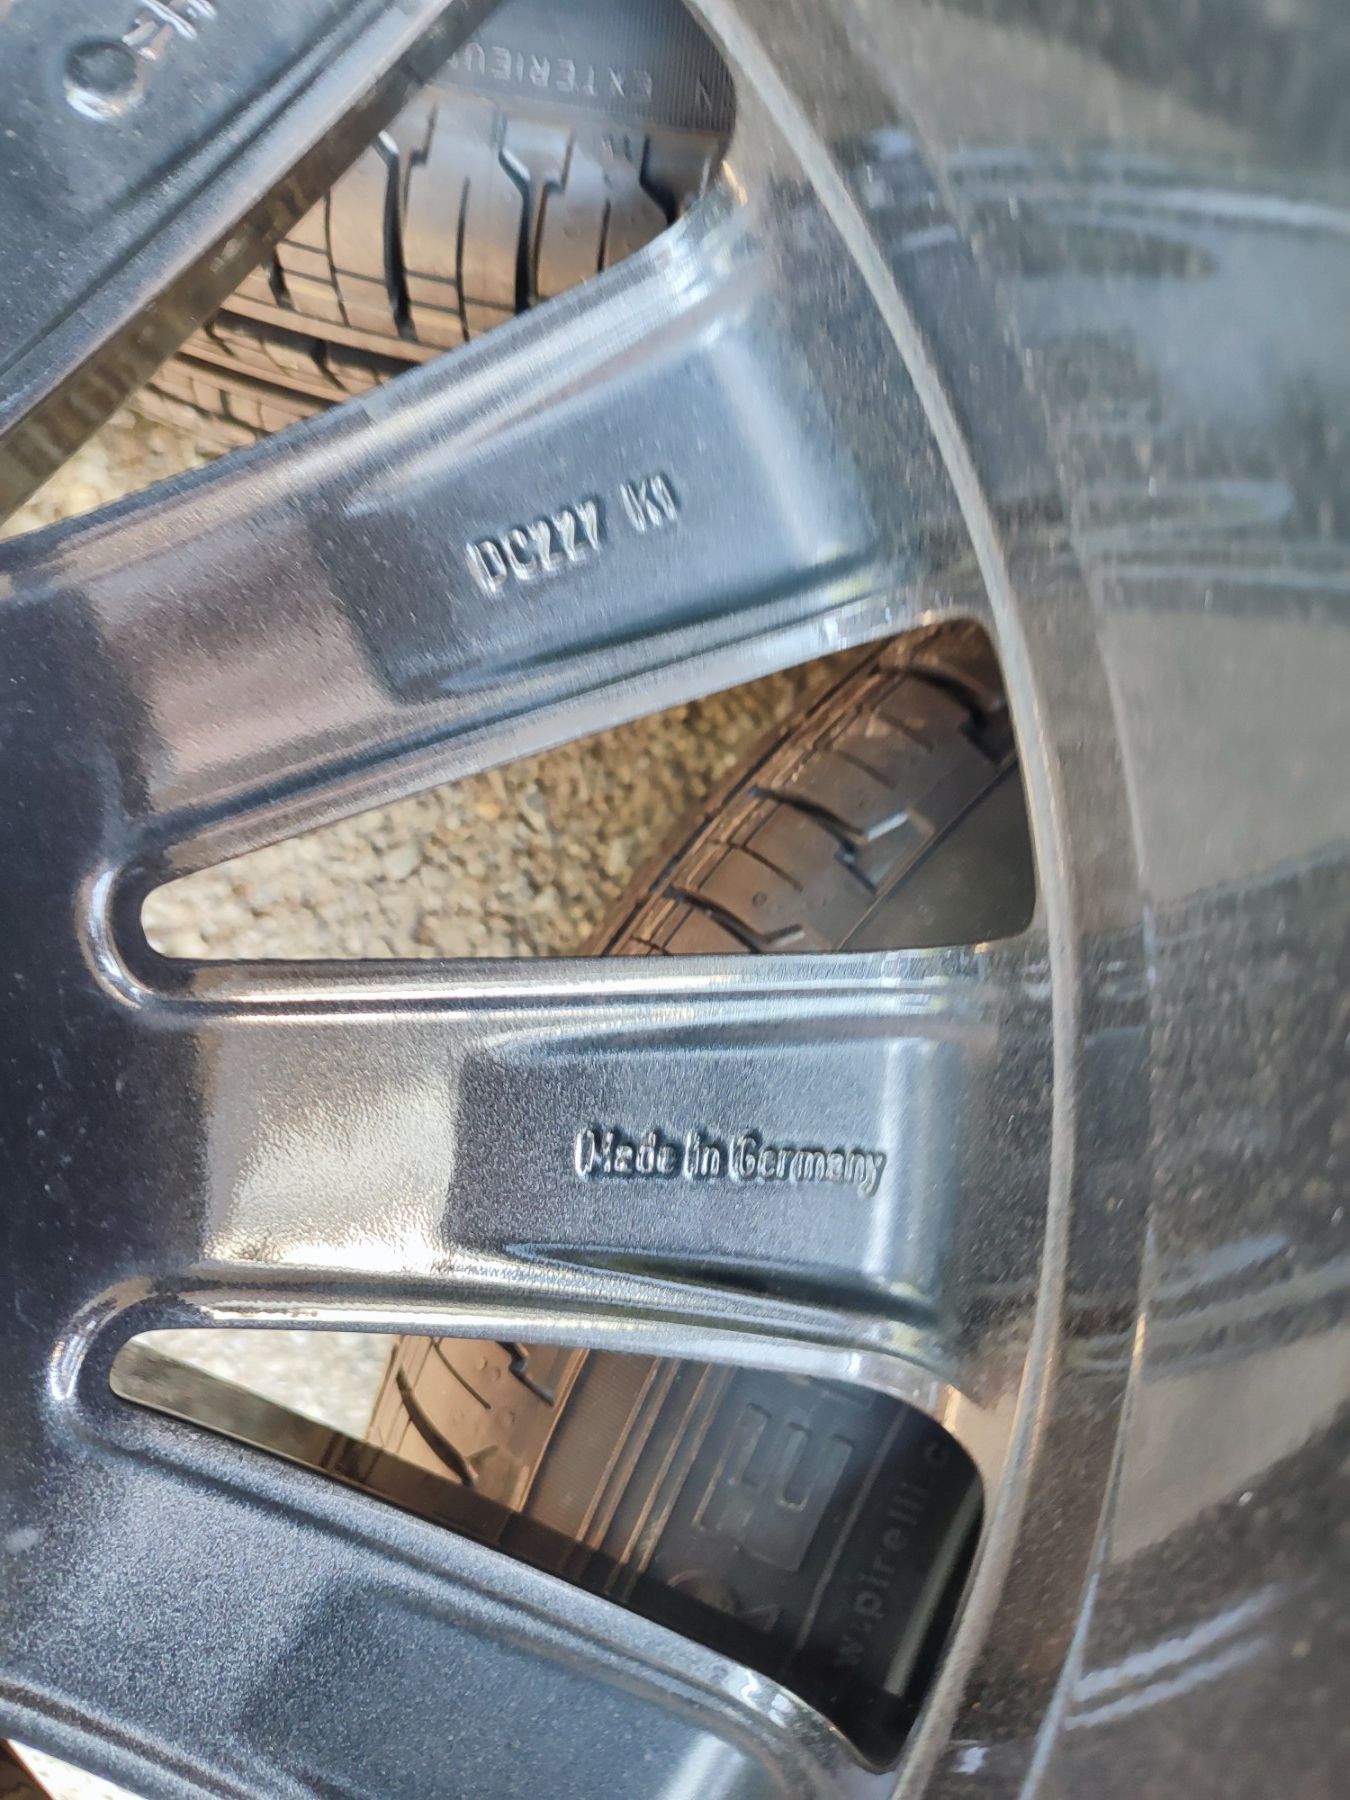 19" оригинални алуминиеви джанти с гуми за Mercedes GLC/GLE/GLBML...